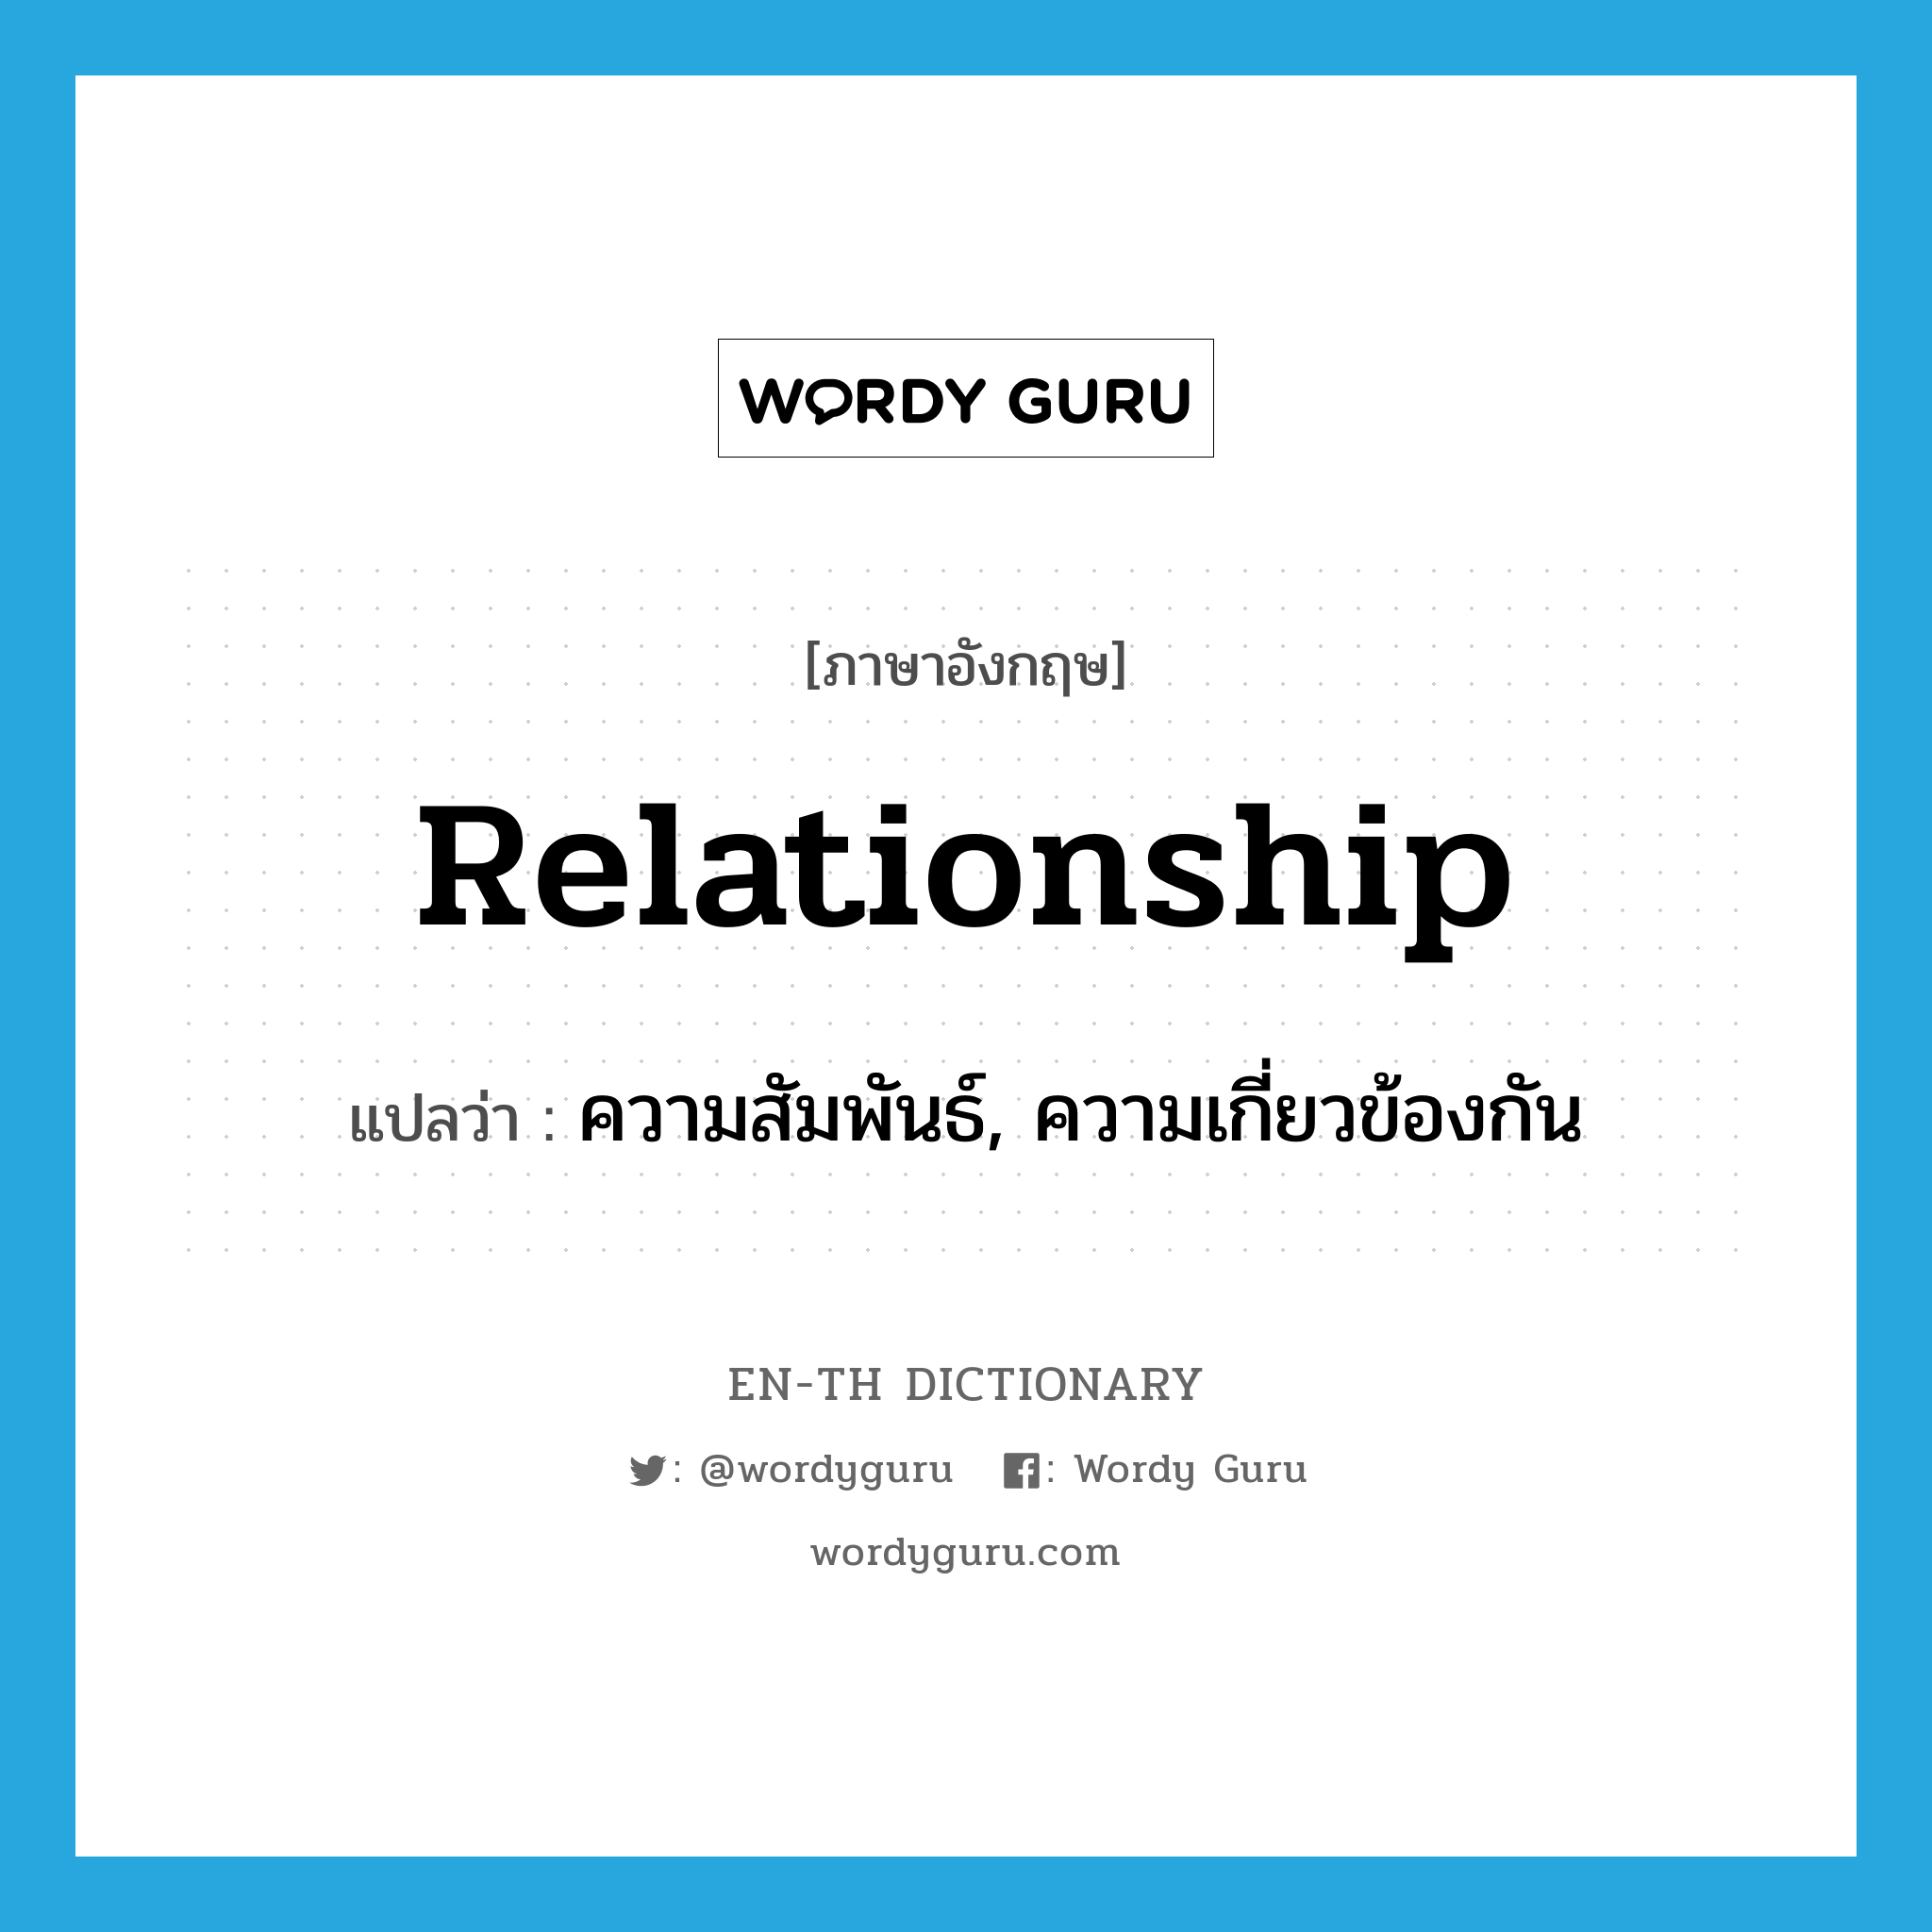 ความสัมพันธ์, ความเกี่ยวข้องกัน ภาษาอังกฤษ?, คำศัพท์ภาษาอังกฤษ ความสัมพันธ์, ความเกี่ยวข้องกัน แปลว่า relationship ประเภท N หมวด N